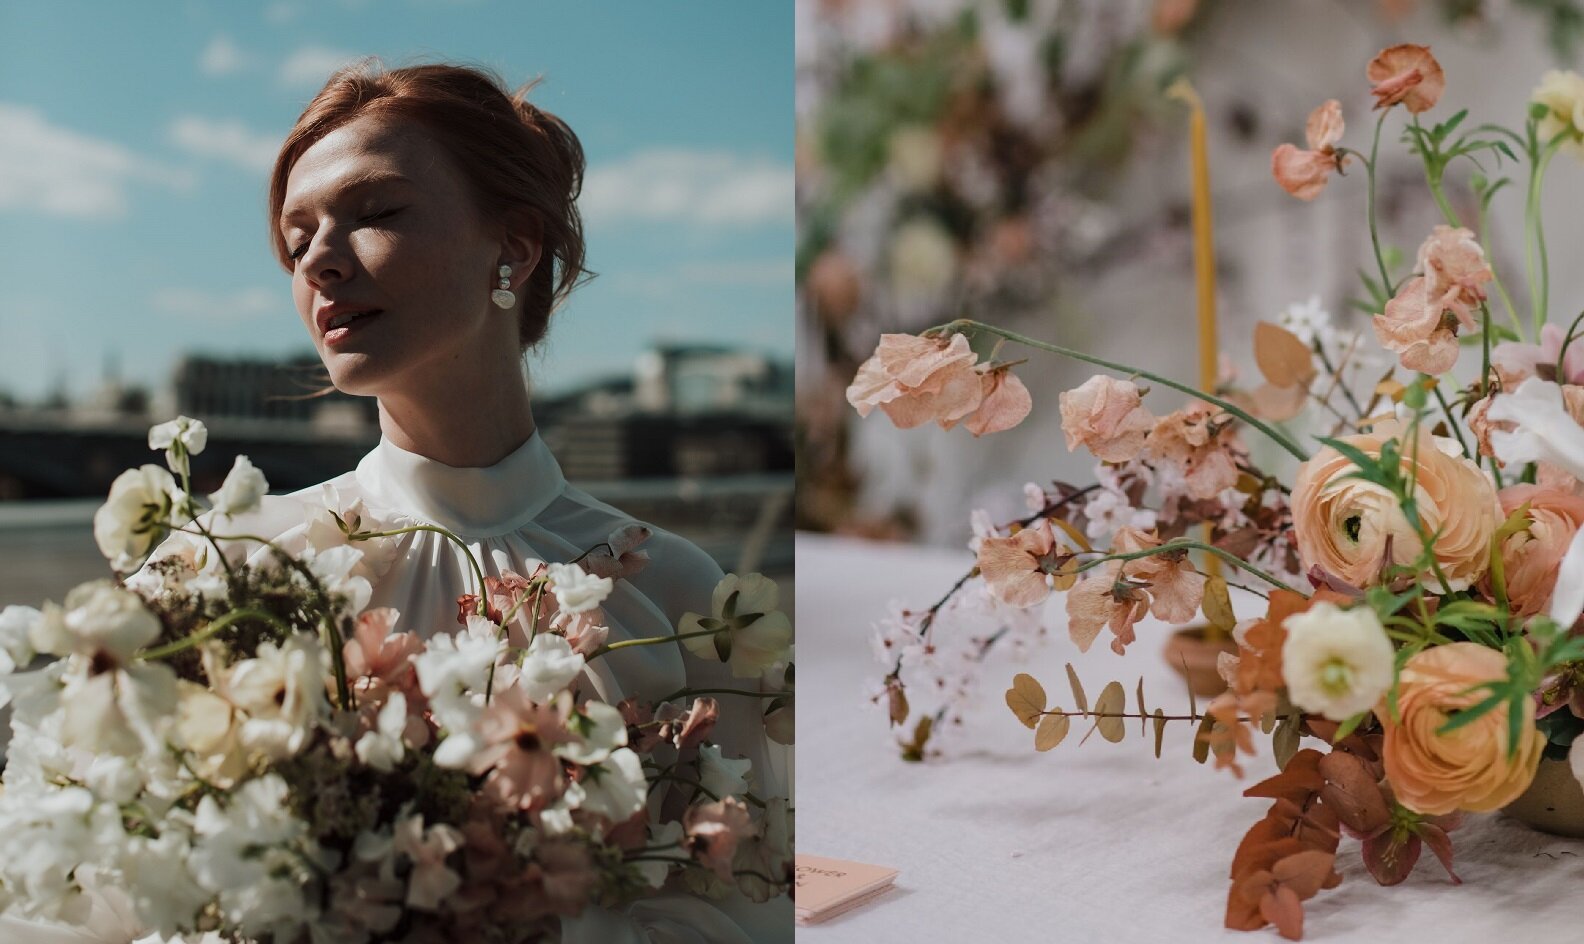 Flower and Fern Sussex Wedding Florist collage.jpg